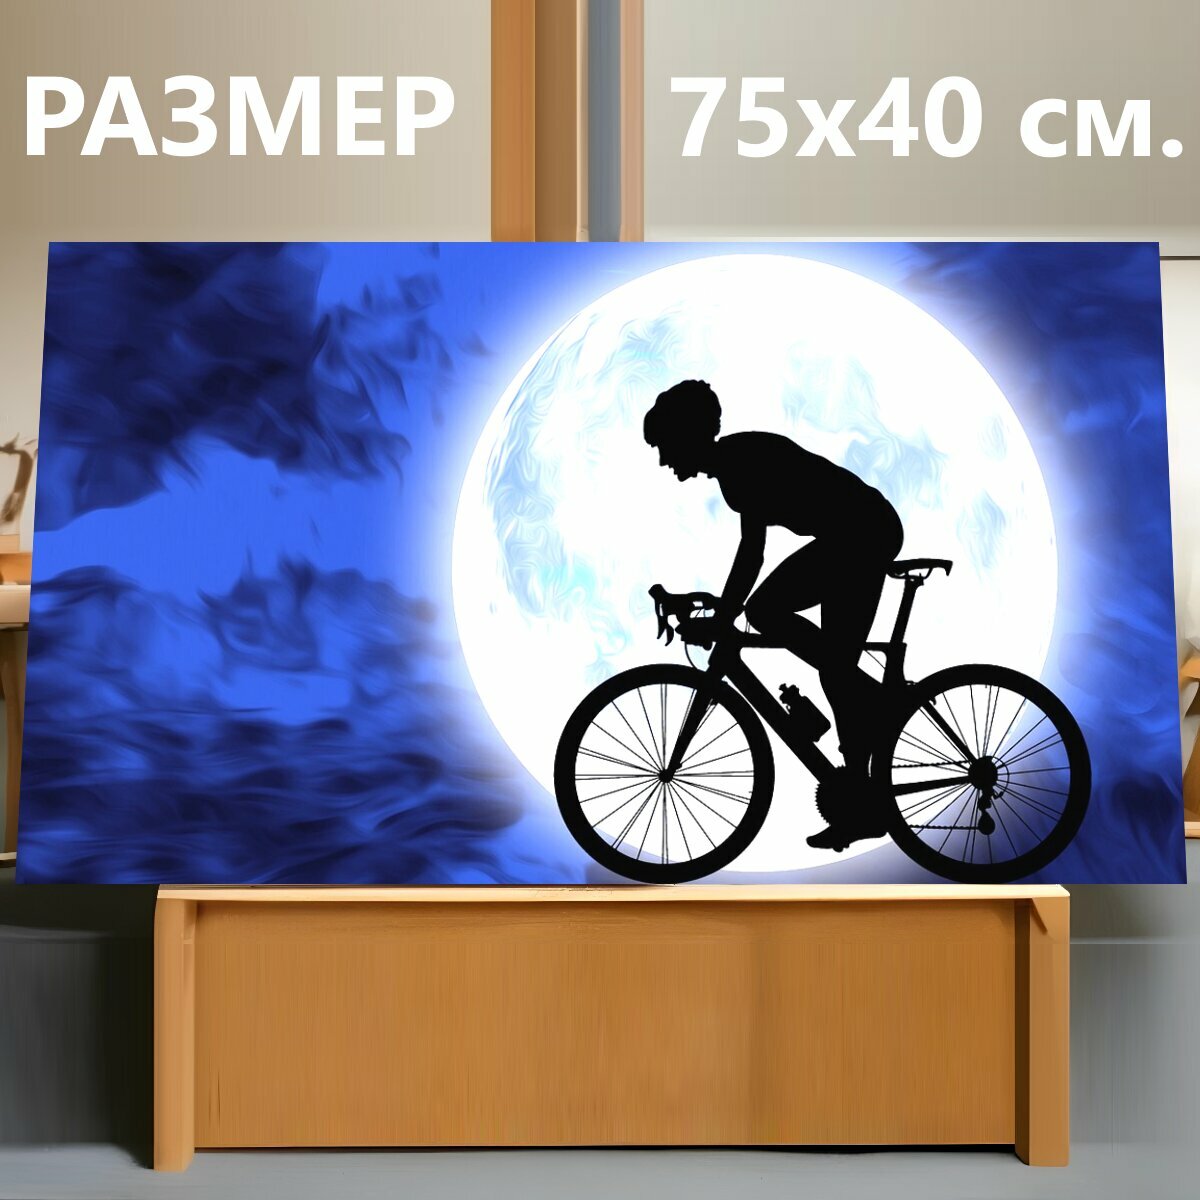 Картина на холсте "Велосипед, кататься на велосипеде, езда на велосипеде" на подрамнике 75х40 см. для интерьера